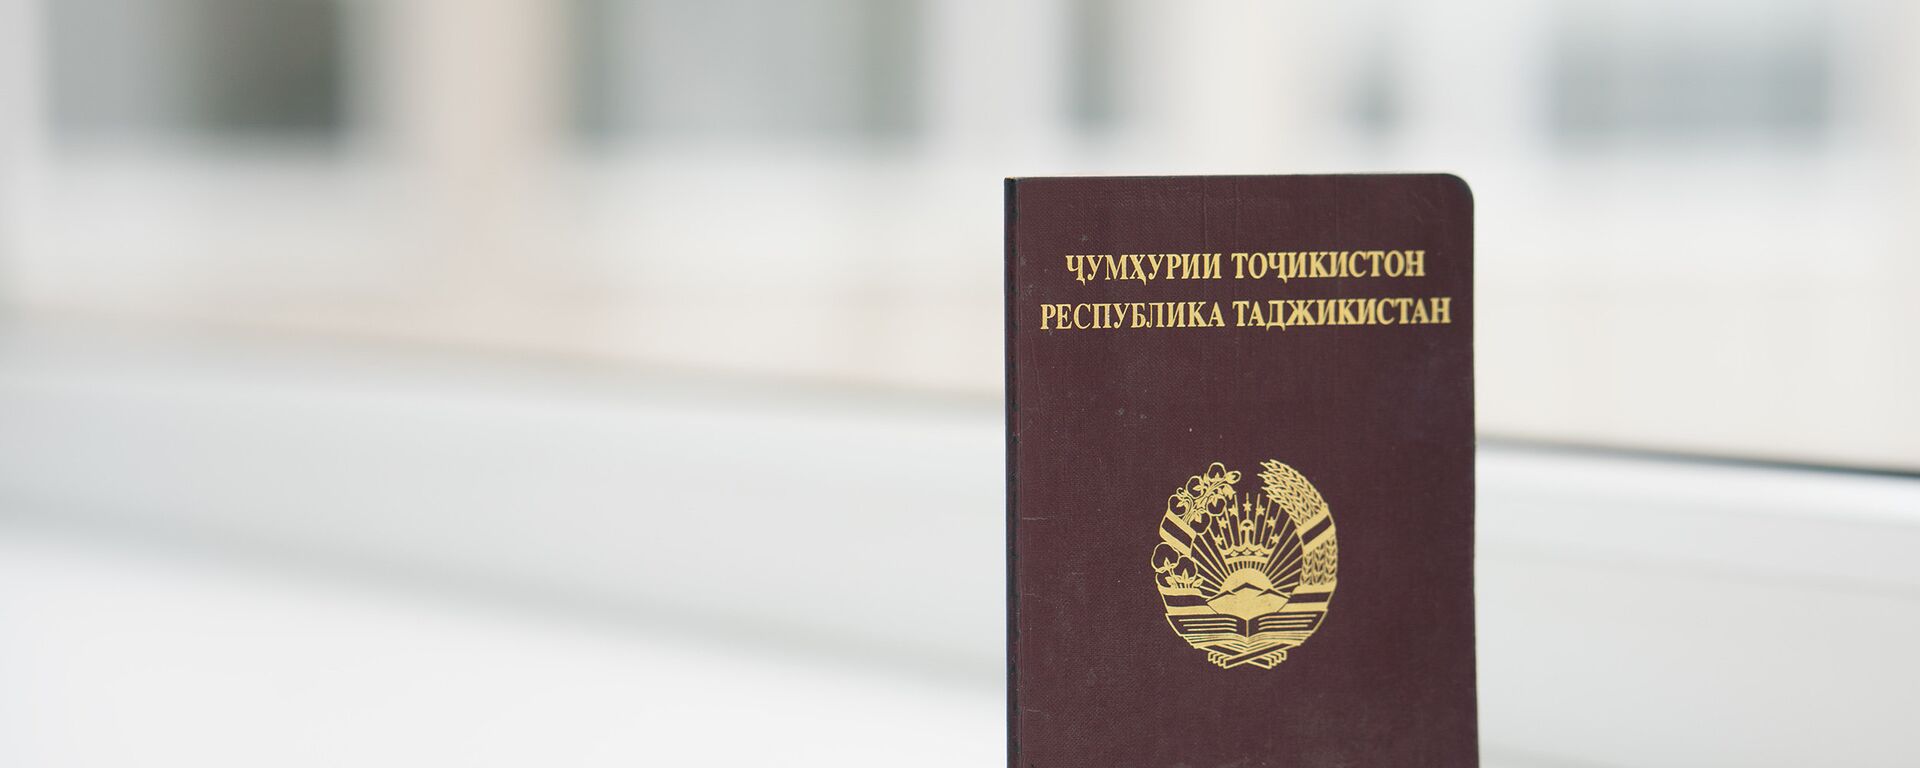 Обложка паспорта РТ, архивное фото - Sputnik Тоҷикистон, 1920, 23.06.2019